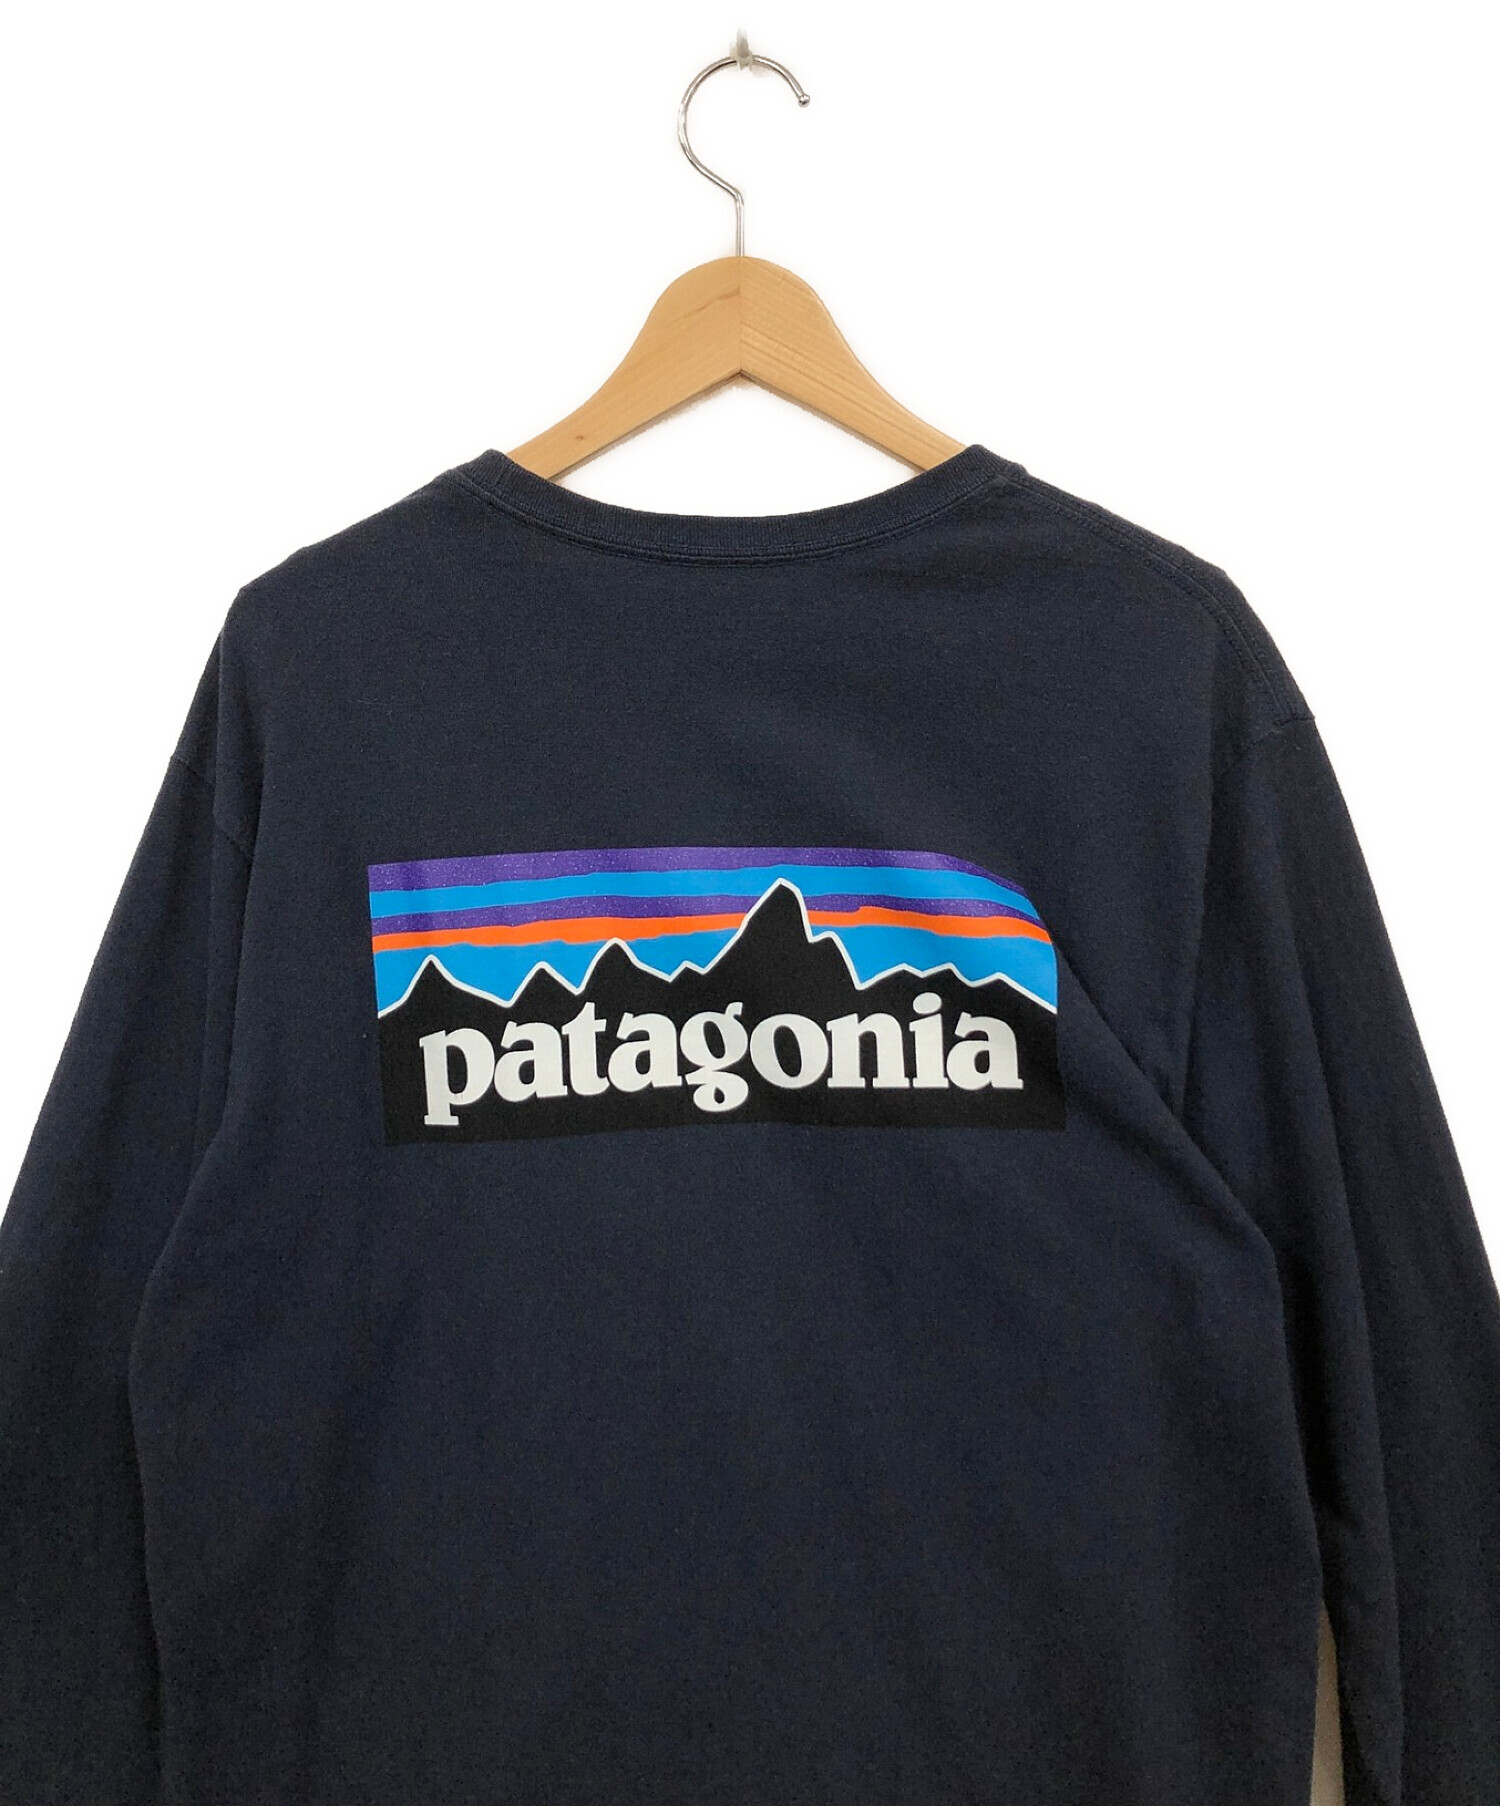 Patagonia (パタゴニア) ロングスリーブTシャツ ネイビー サイズ:S